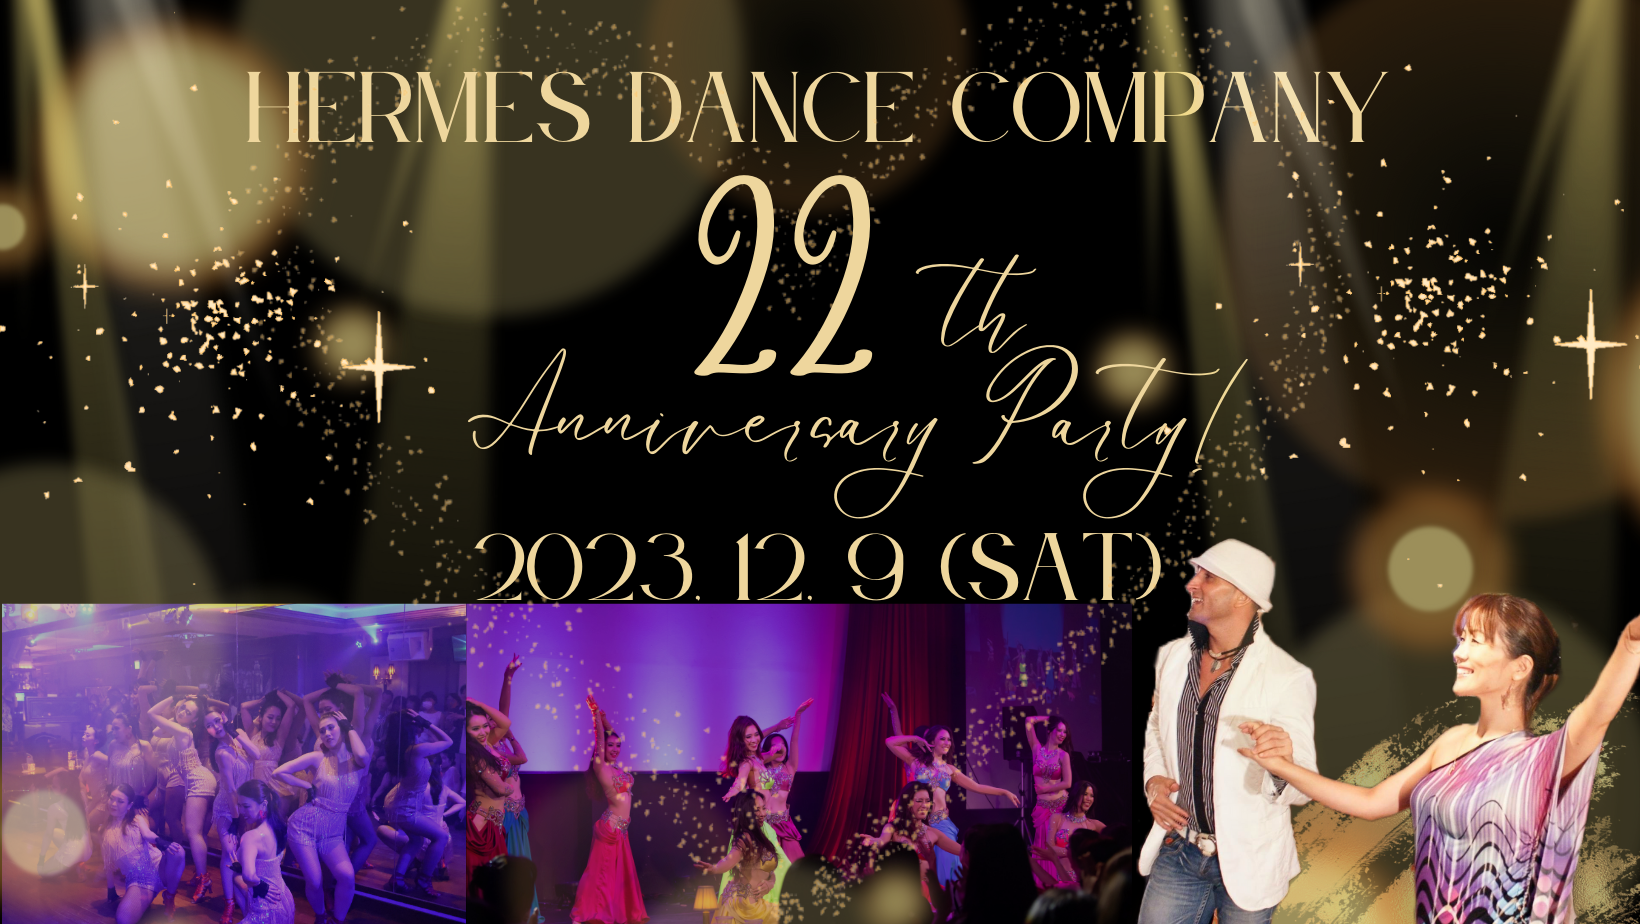 2023年12月9日(土) Hermes Dance Company 22th Anniversary Party!